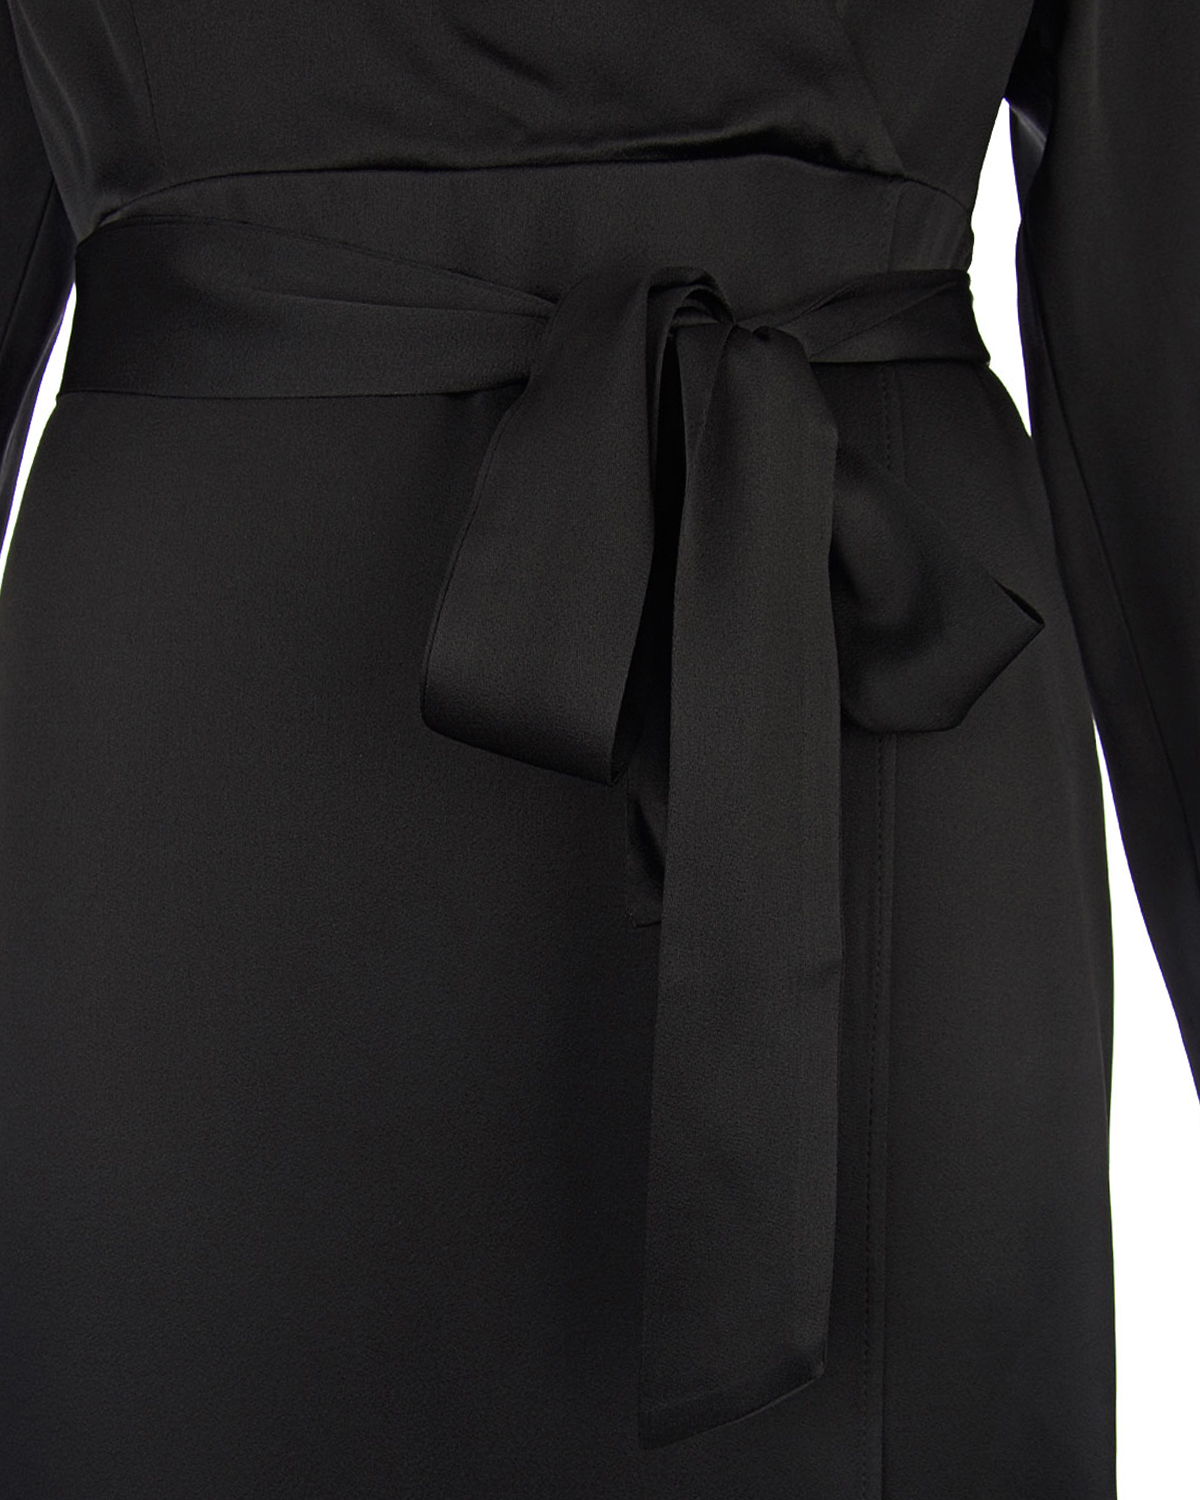 Черное платье с поясом TWINSET, размер 40, цвет черный - фото 7